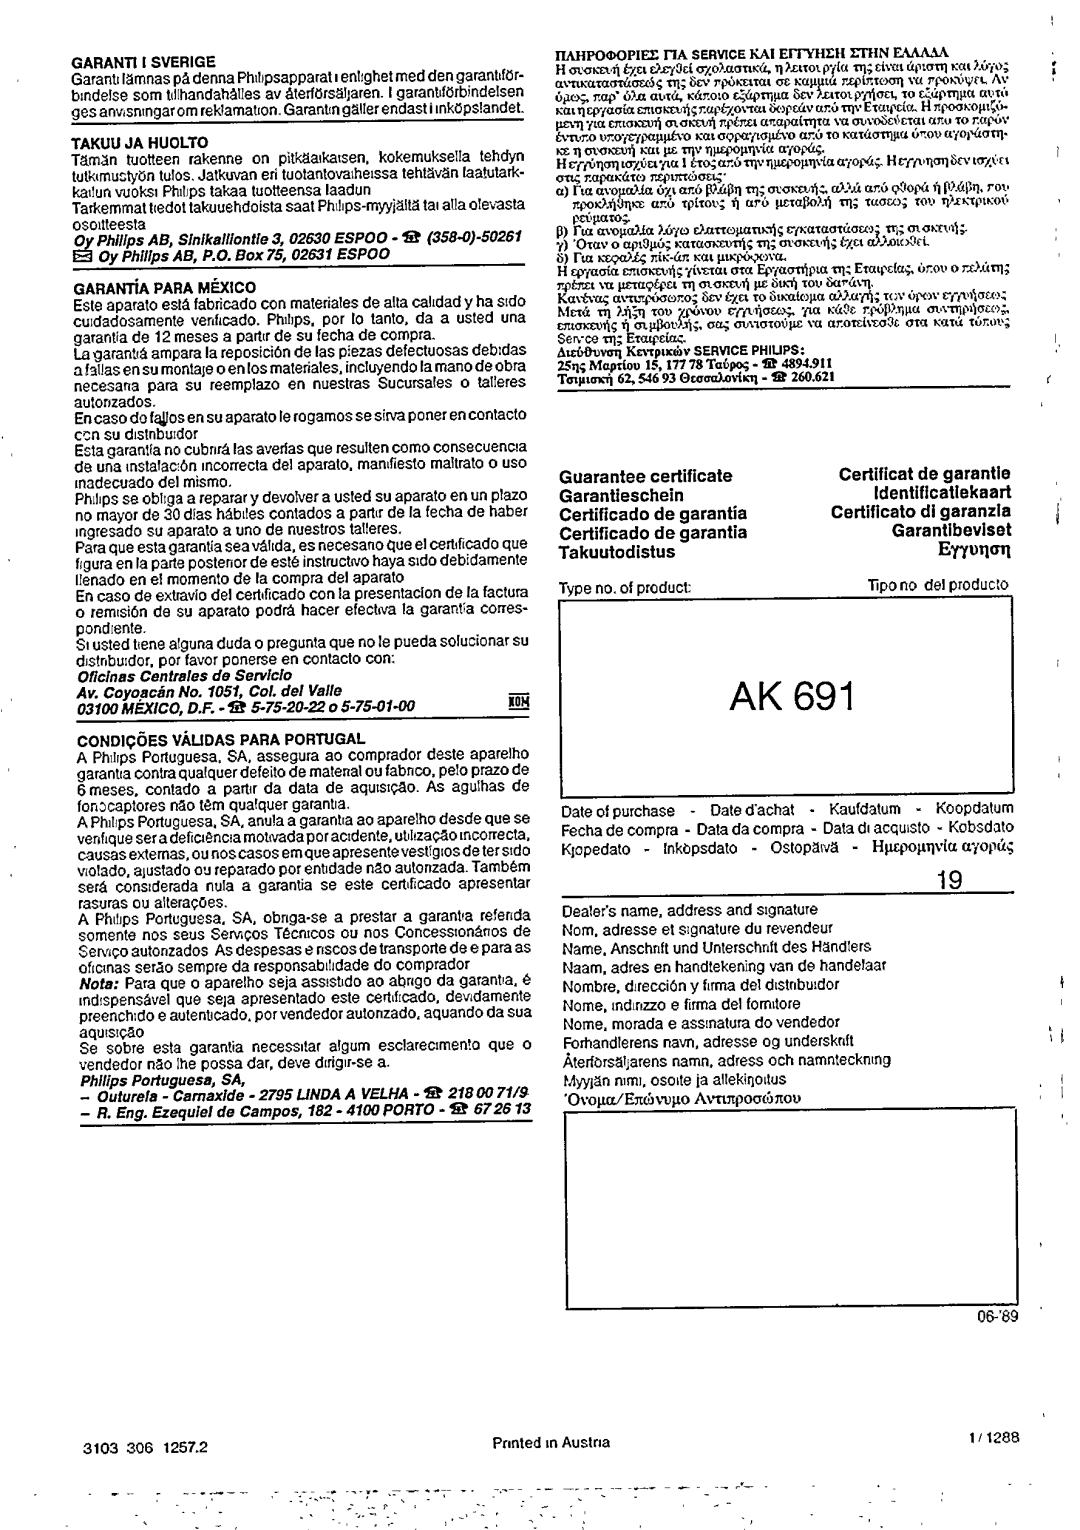 Philips AK 691 manual 